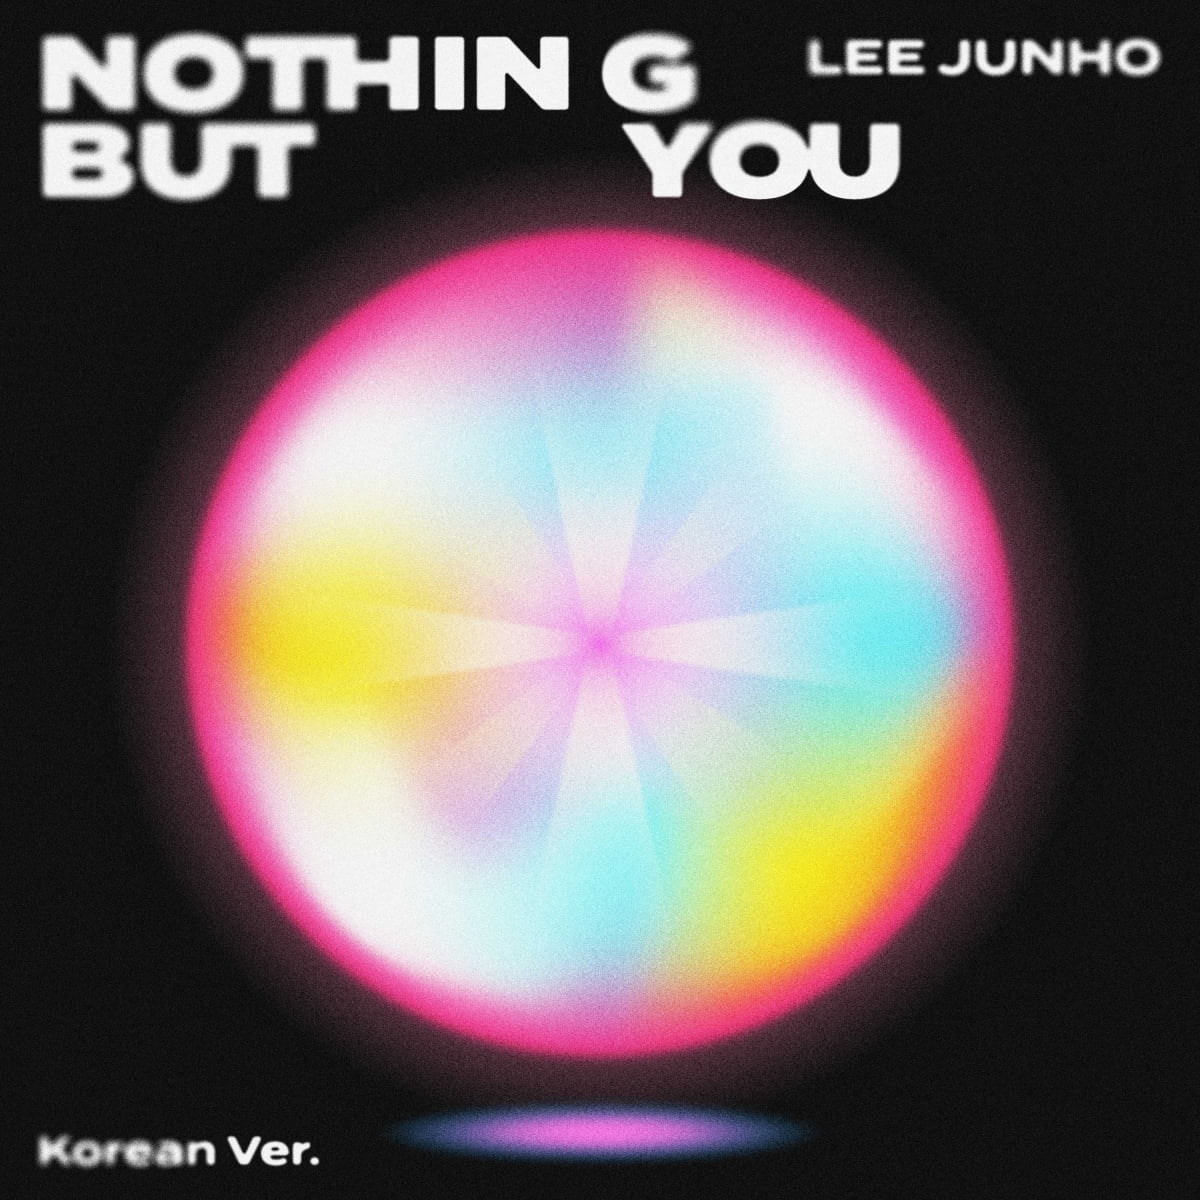 Junho Lee releases digital single